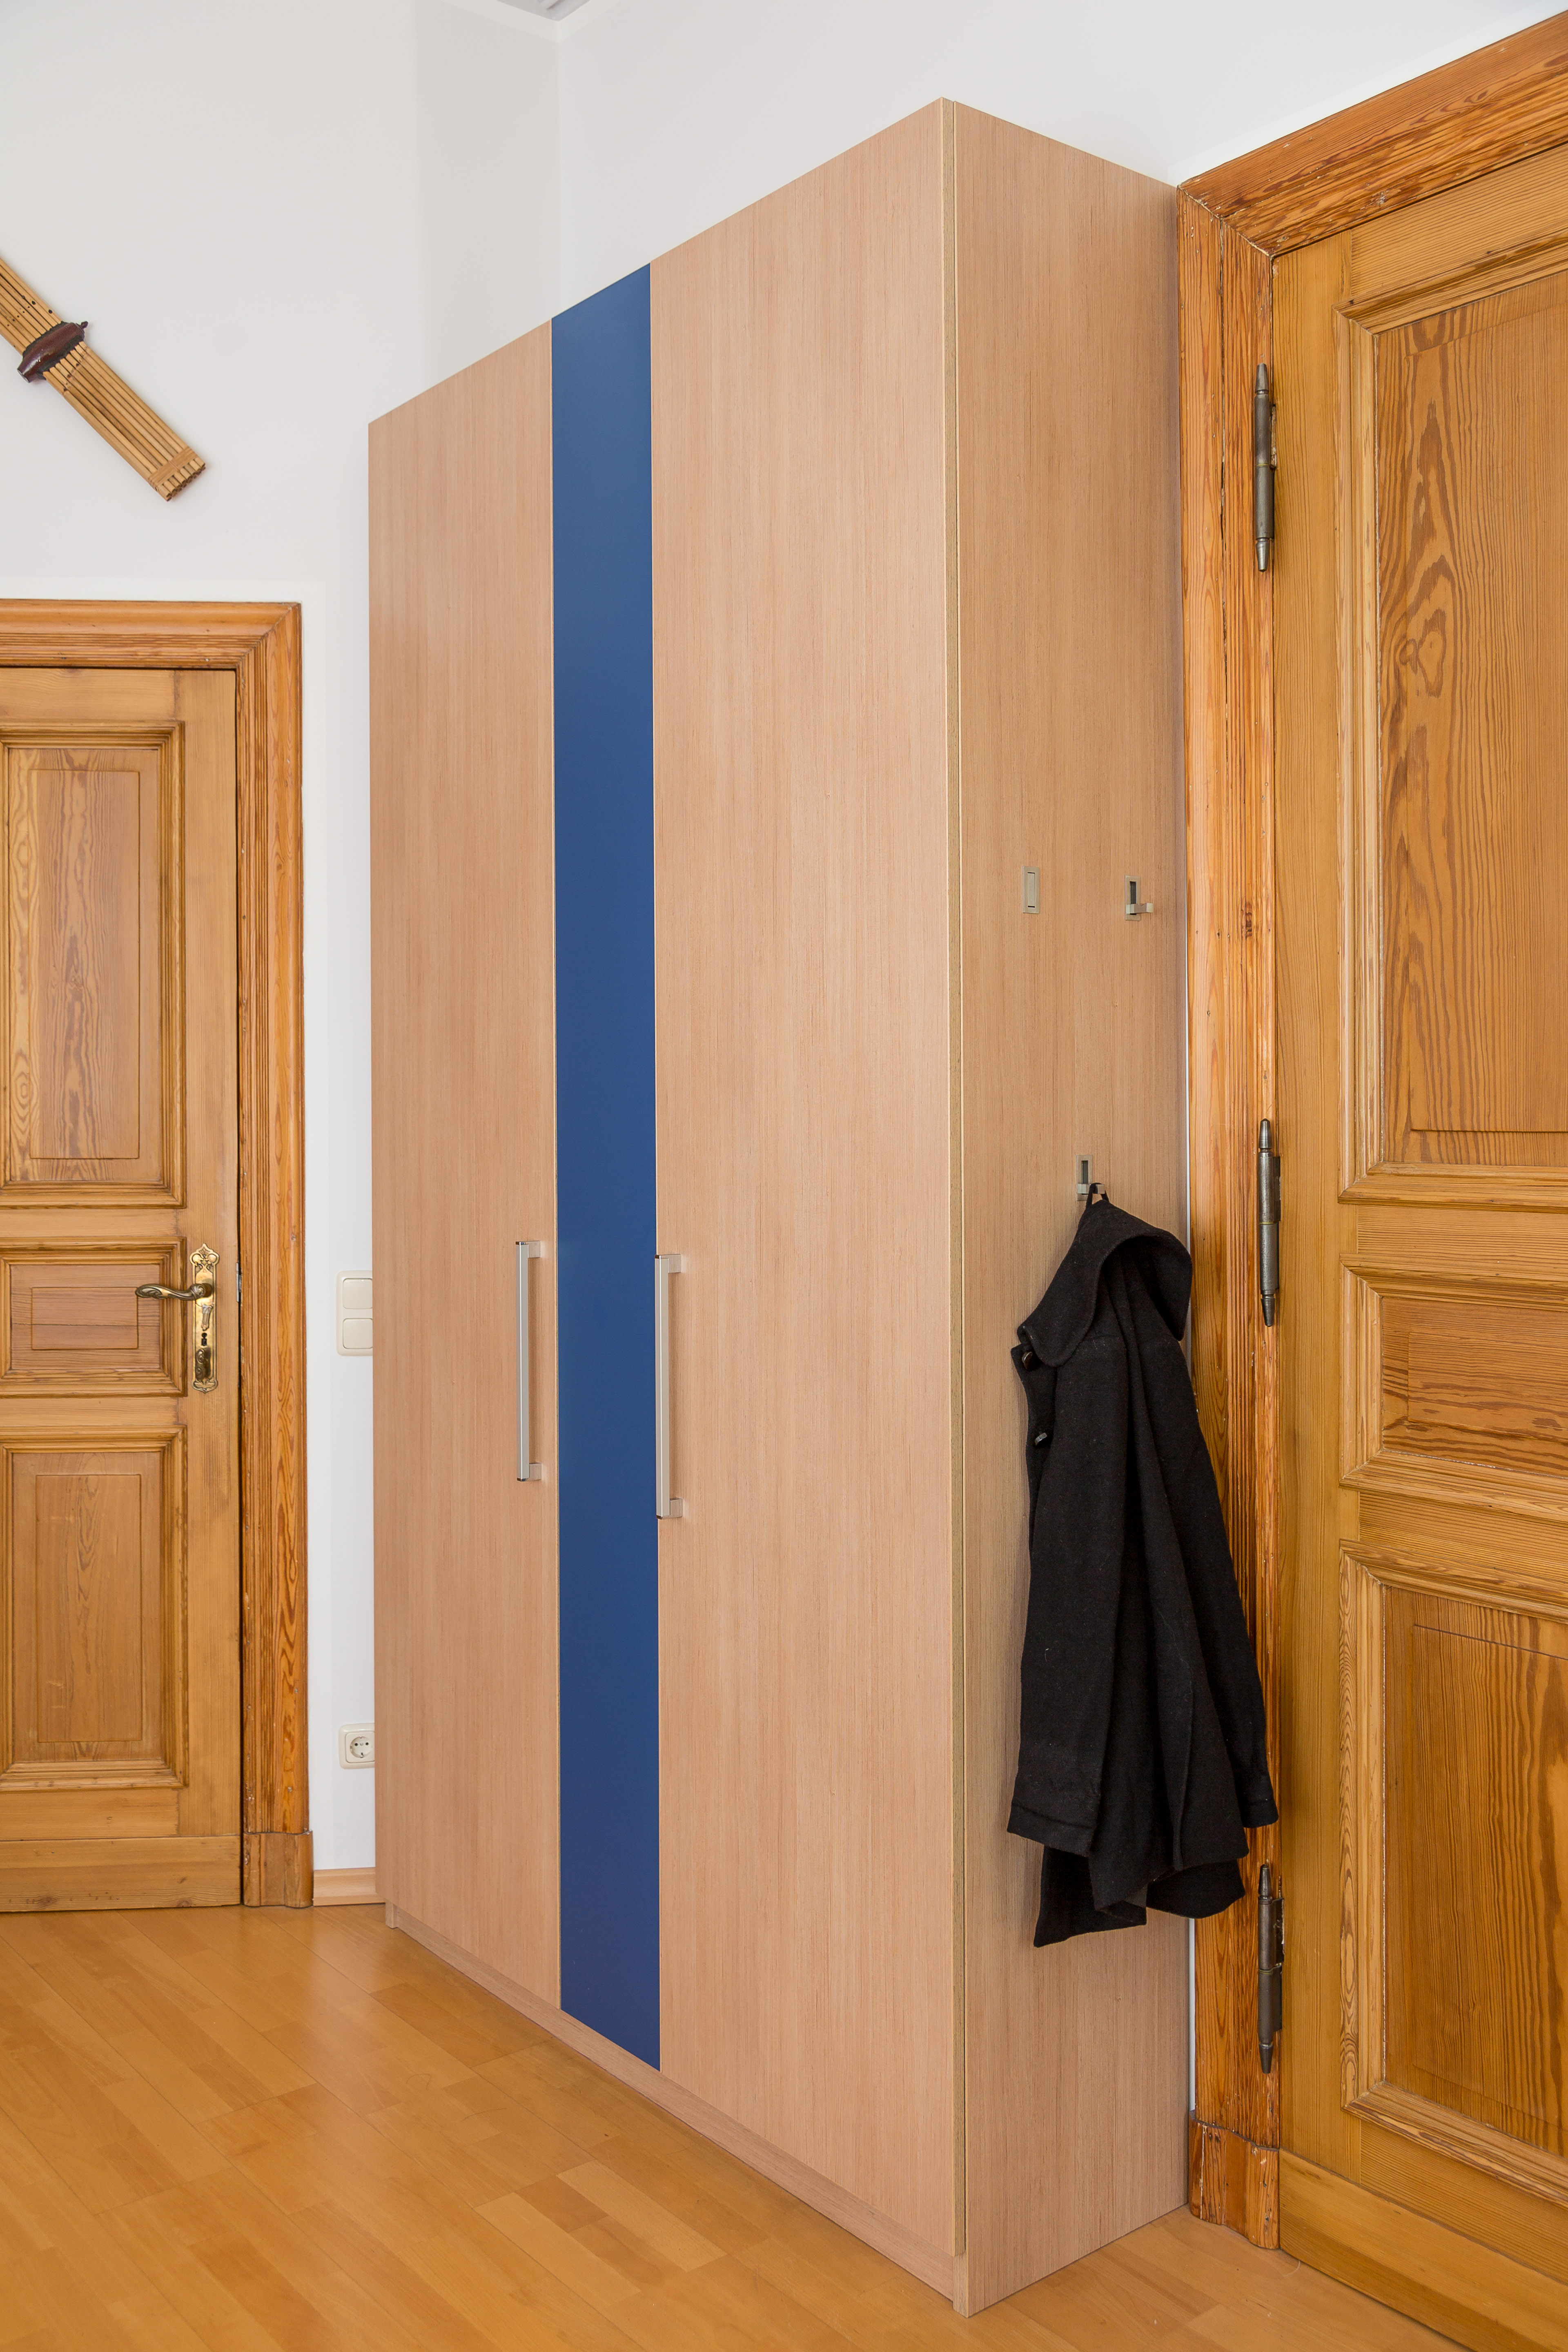 Kleiderschrank mit drei Türen - die grifflose, 
mittlere sieht aus wie eine Festblende - gehört zu einem vierteiligen Ensemble in einem Schlafzimmer